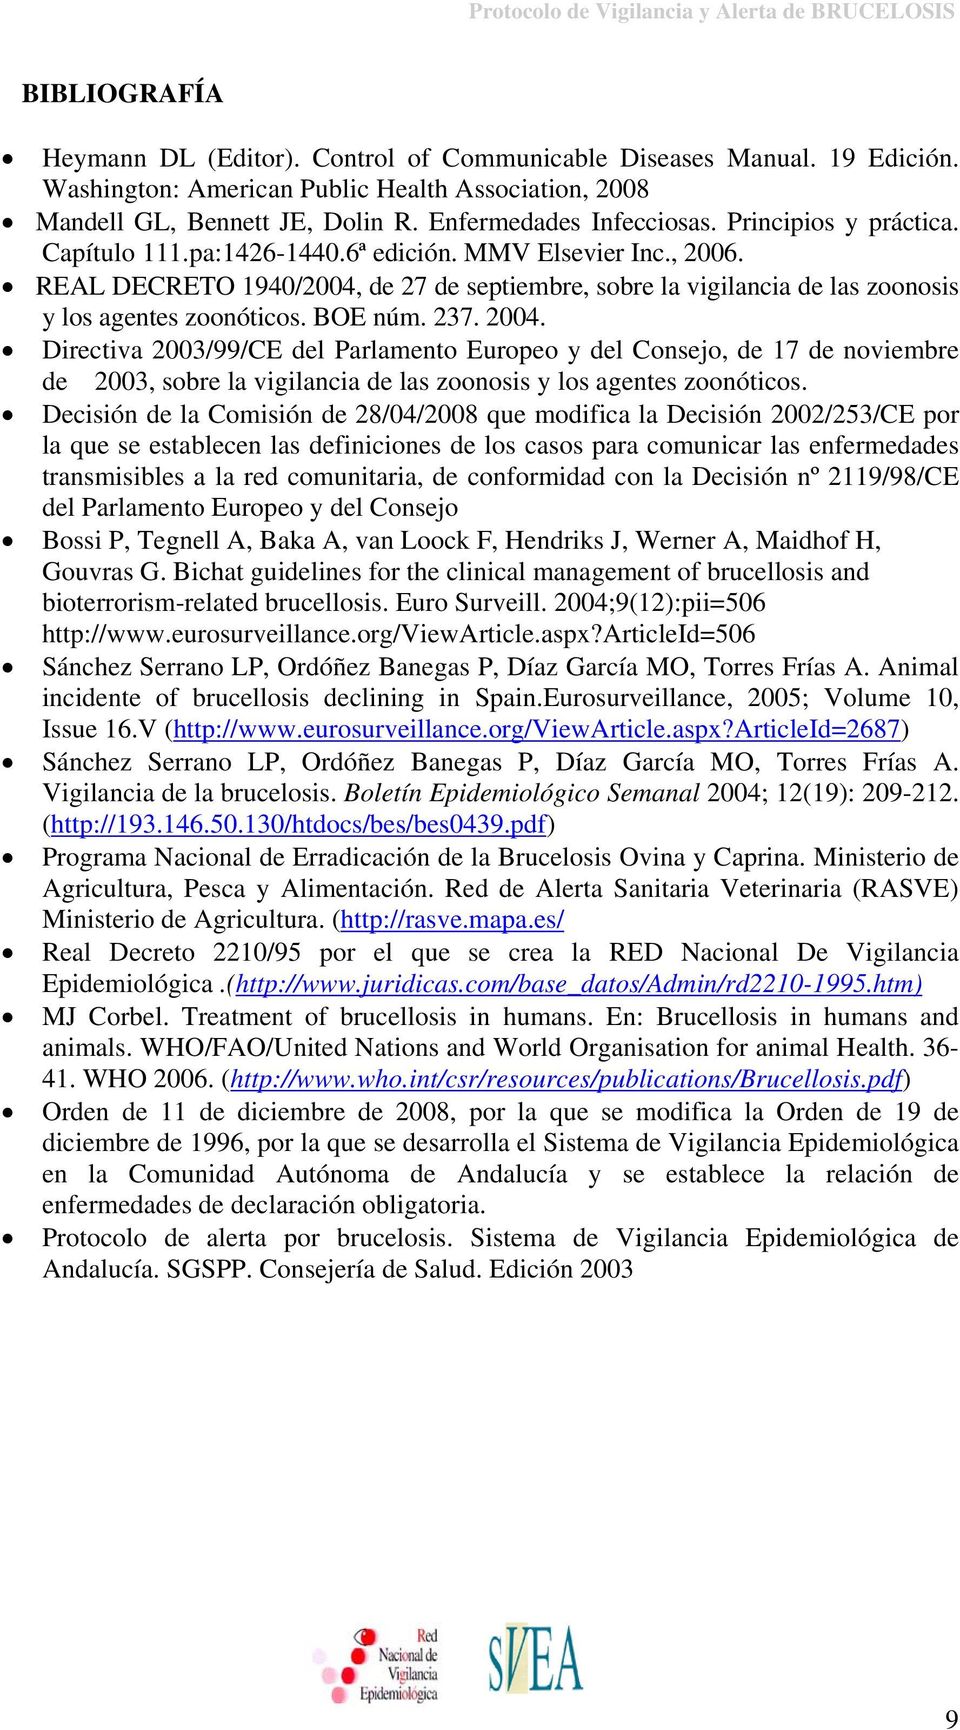 BOE núm. 237. 2004. Directiva 2003/99/CE del Parlamento Europeo y del Consejo, de 17 de noviembre de 2003, sobre la vigilancia de las zoonosis y los agentes zoonóticos.